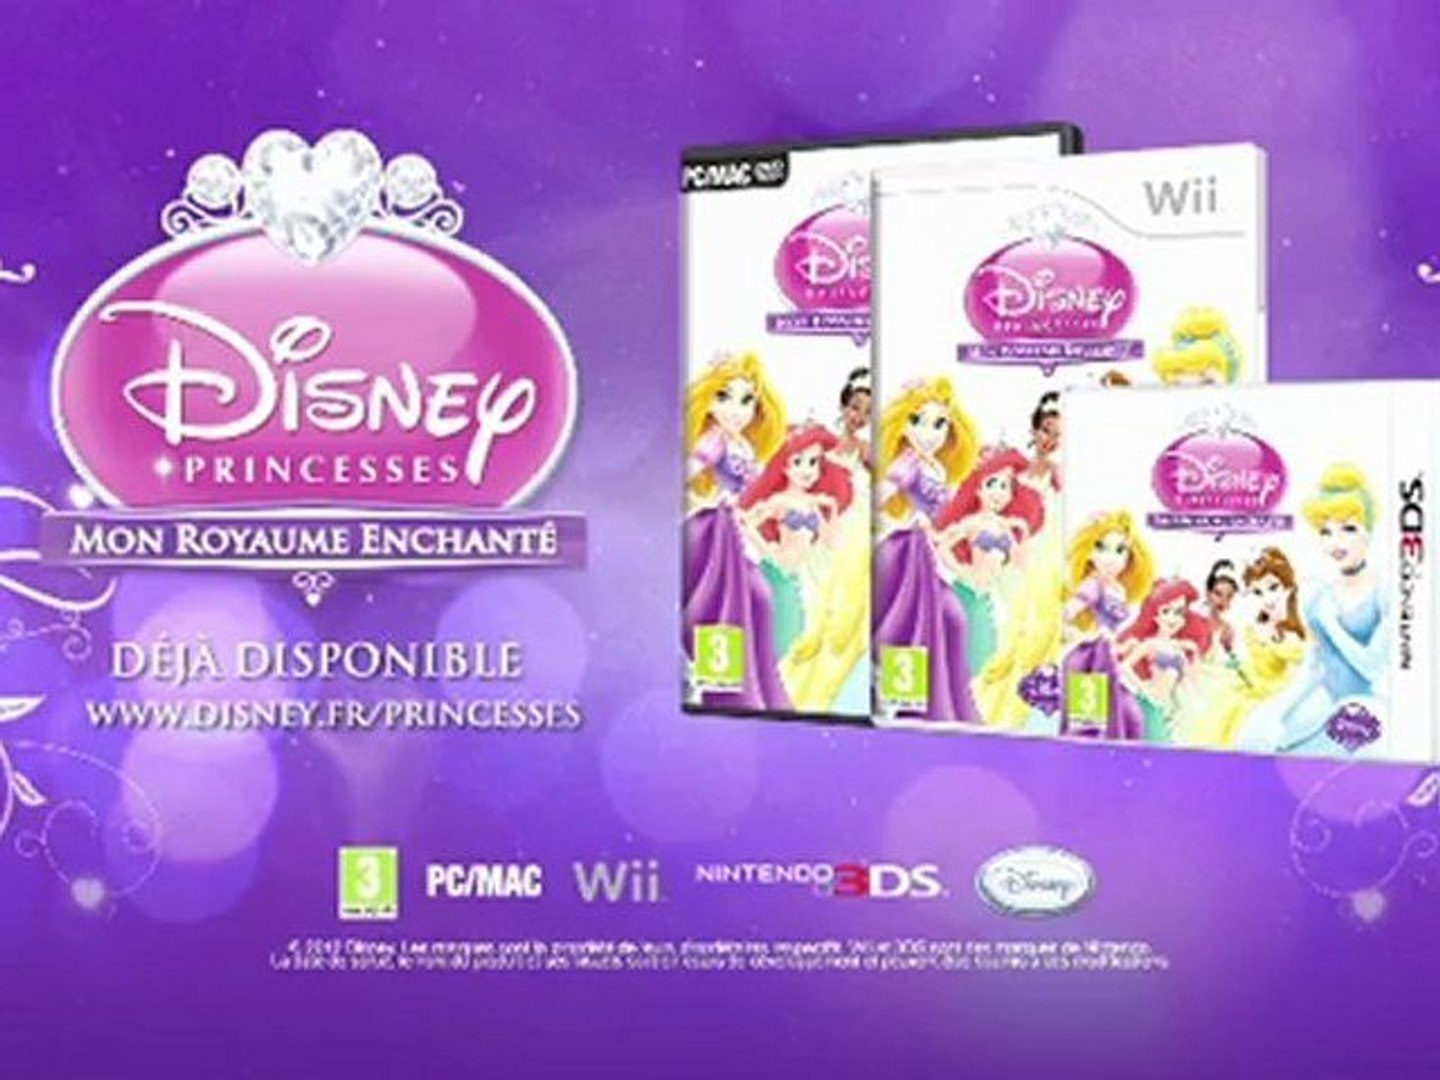 Disney Princesses : Mon Royaume Enchanté - Disponible le 18 octobre 2012  sur Nintendo 3DS Wii et PC - Vidéo Dailymotion